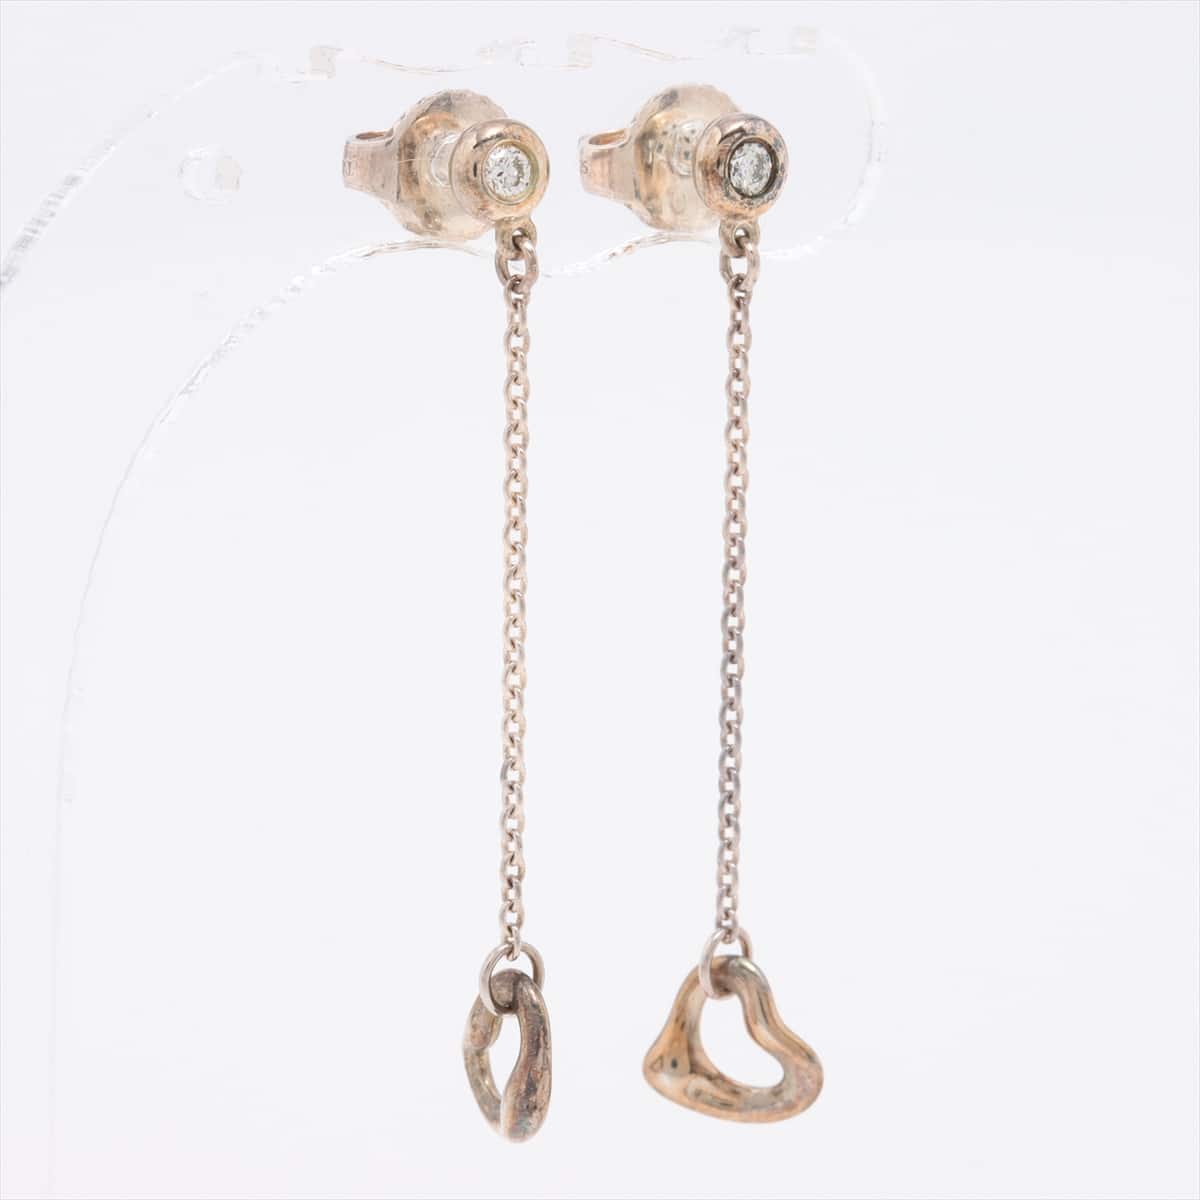 Tiffany Open Heart Piercing jewelry (for both ears) 925 1.6g Silver